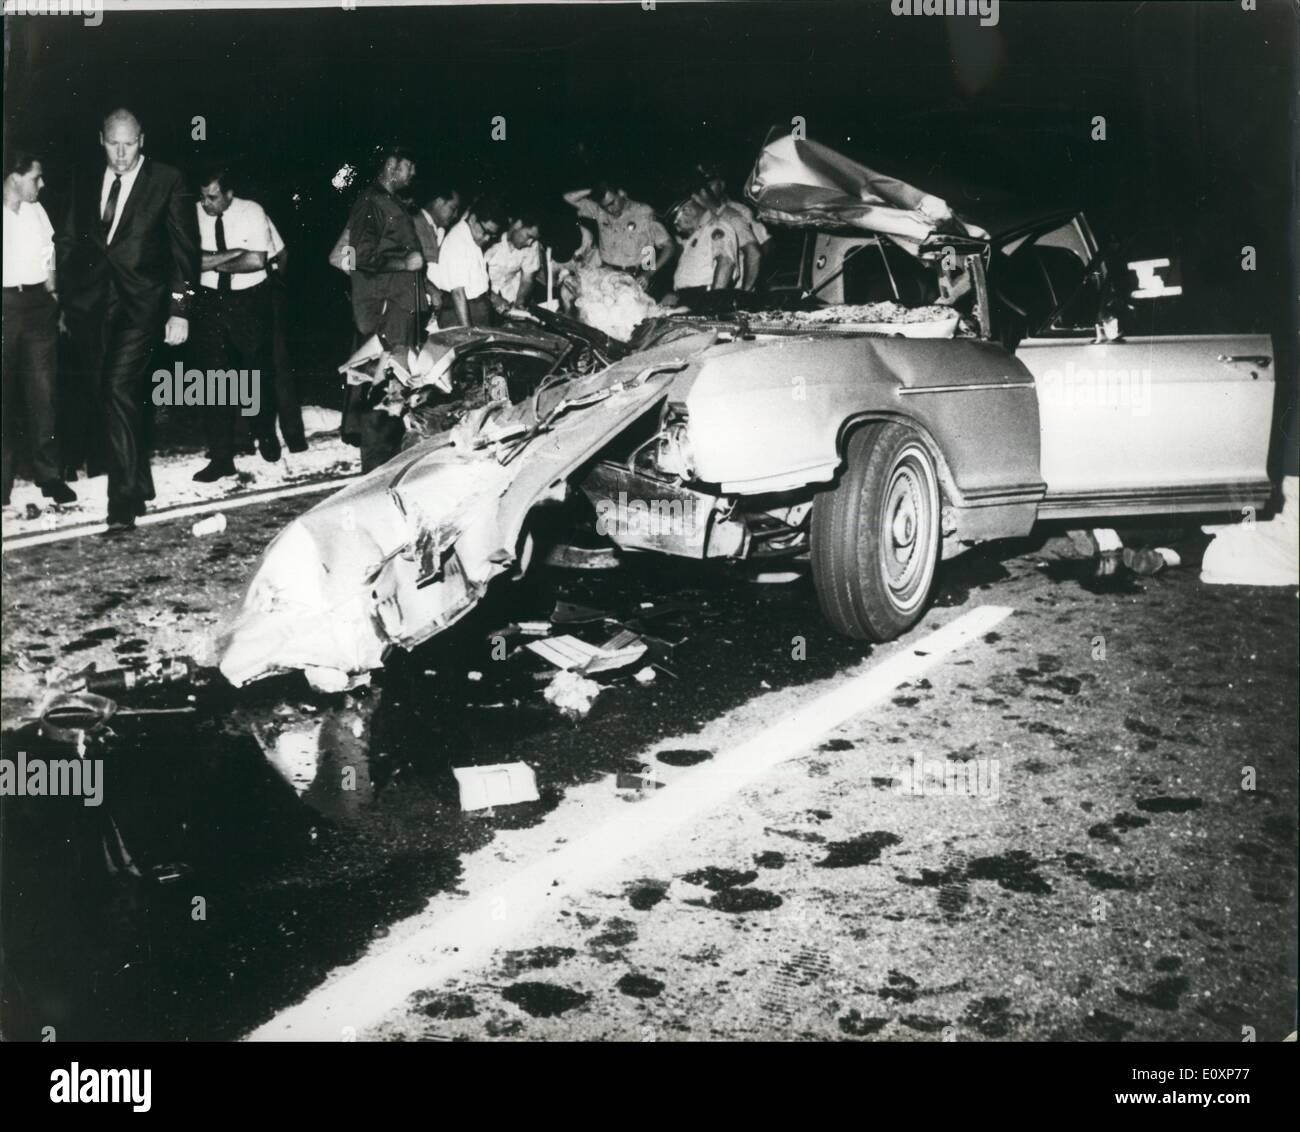 7 Juli 1967 Jayne Mansfield Getötet In Auto Crash Foto Zeigt Die